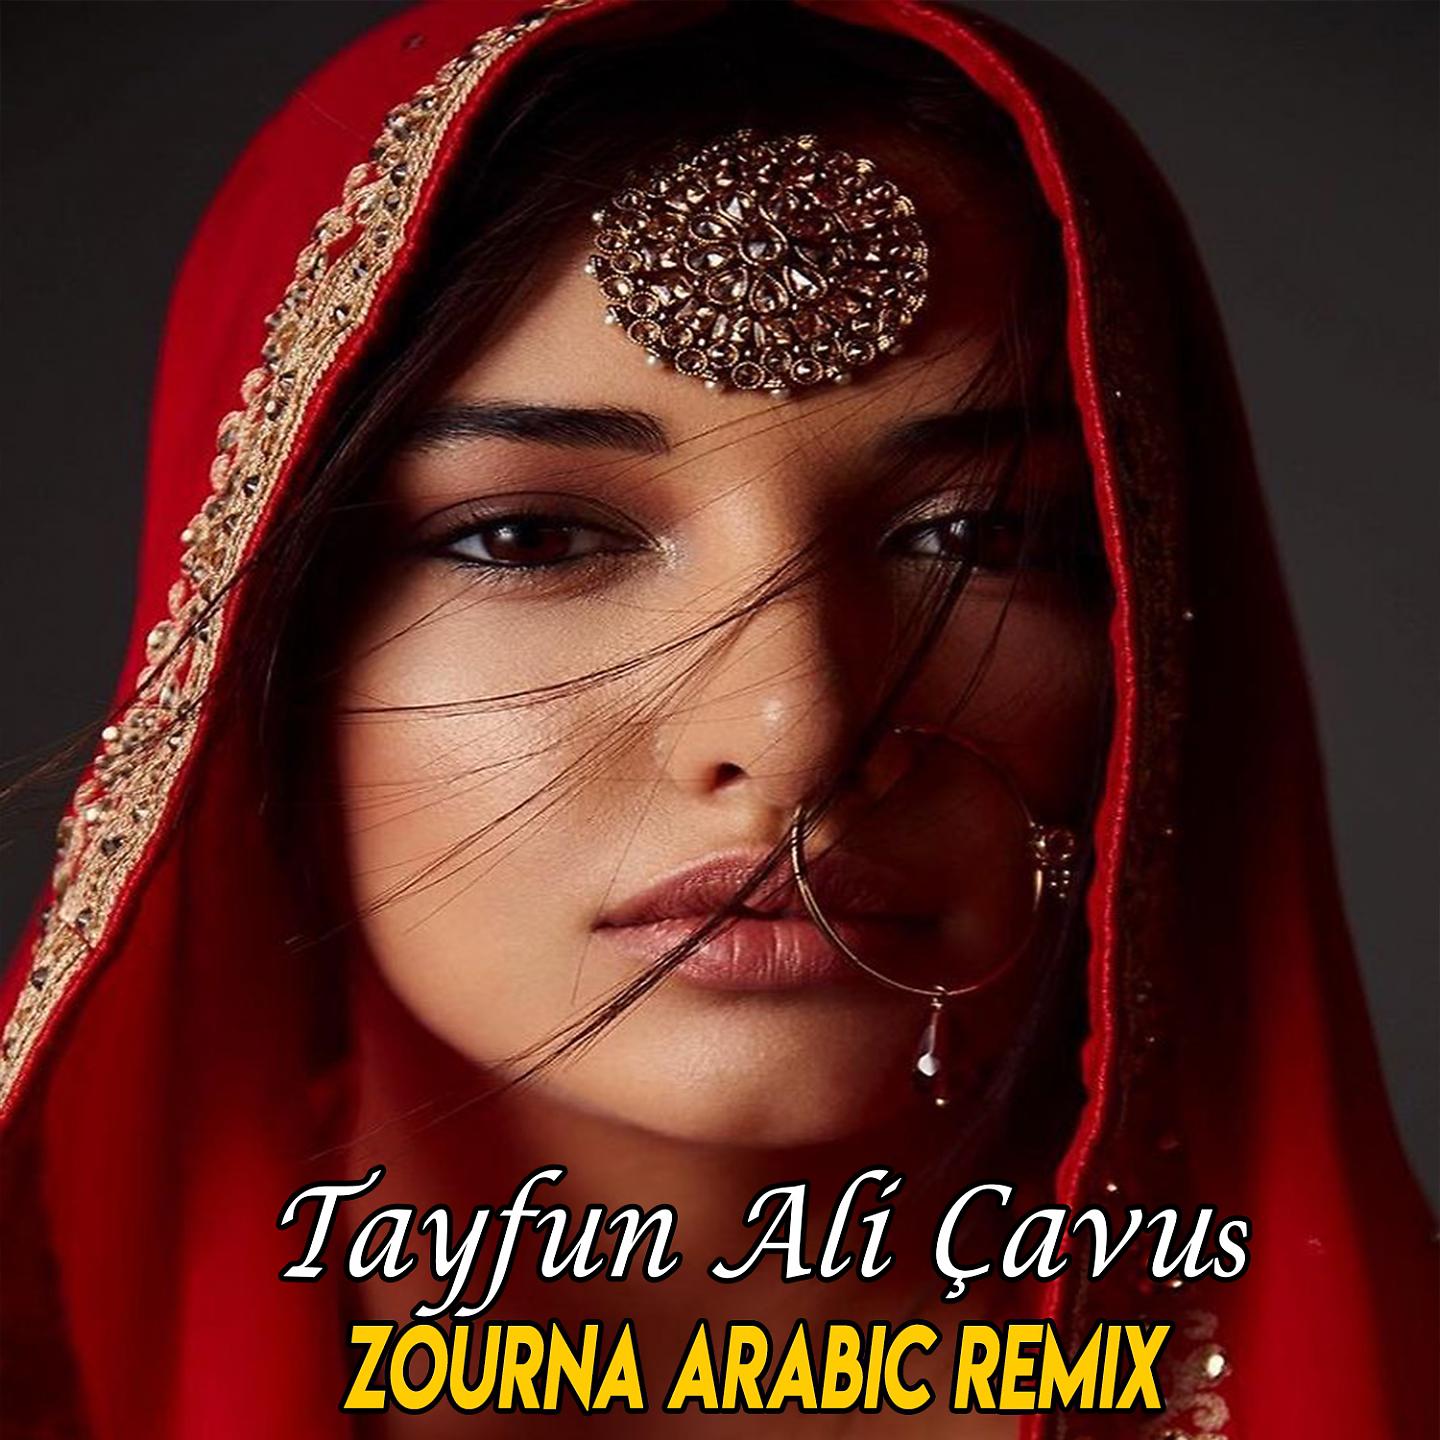 Know what you want arabic. Арабский ремикс. Arabic Remix фото. Arabic Remix mp3. Арабик шмутс.